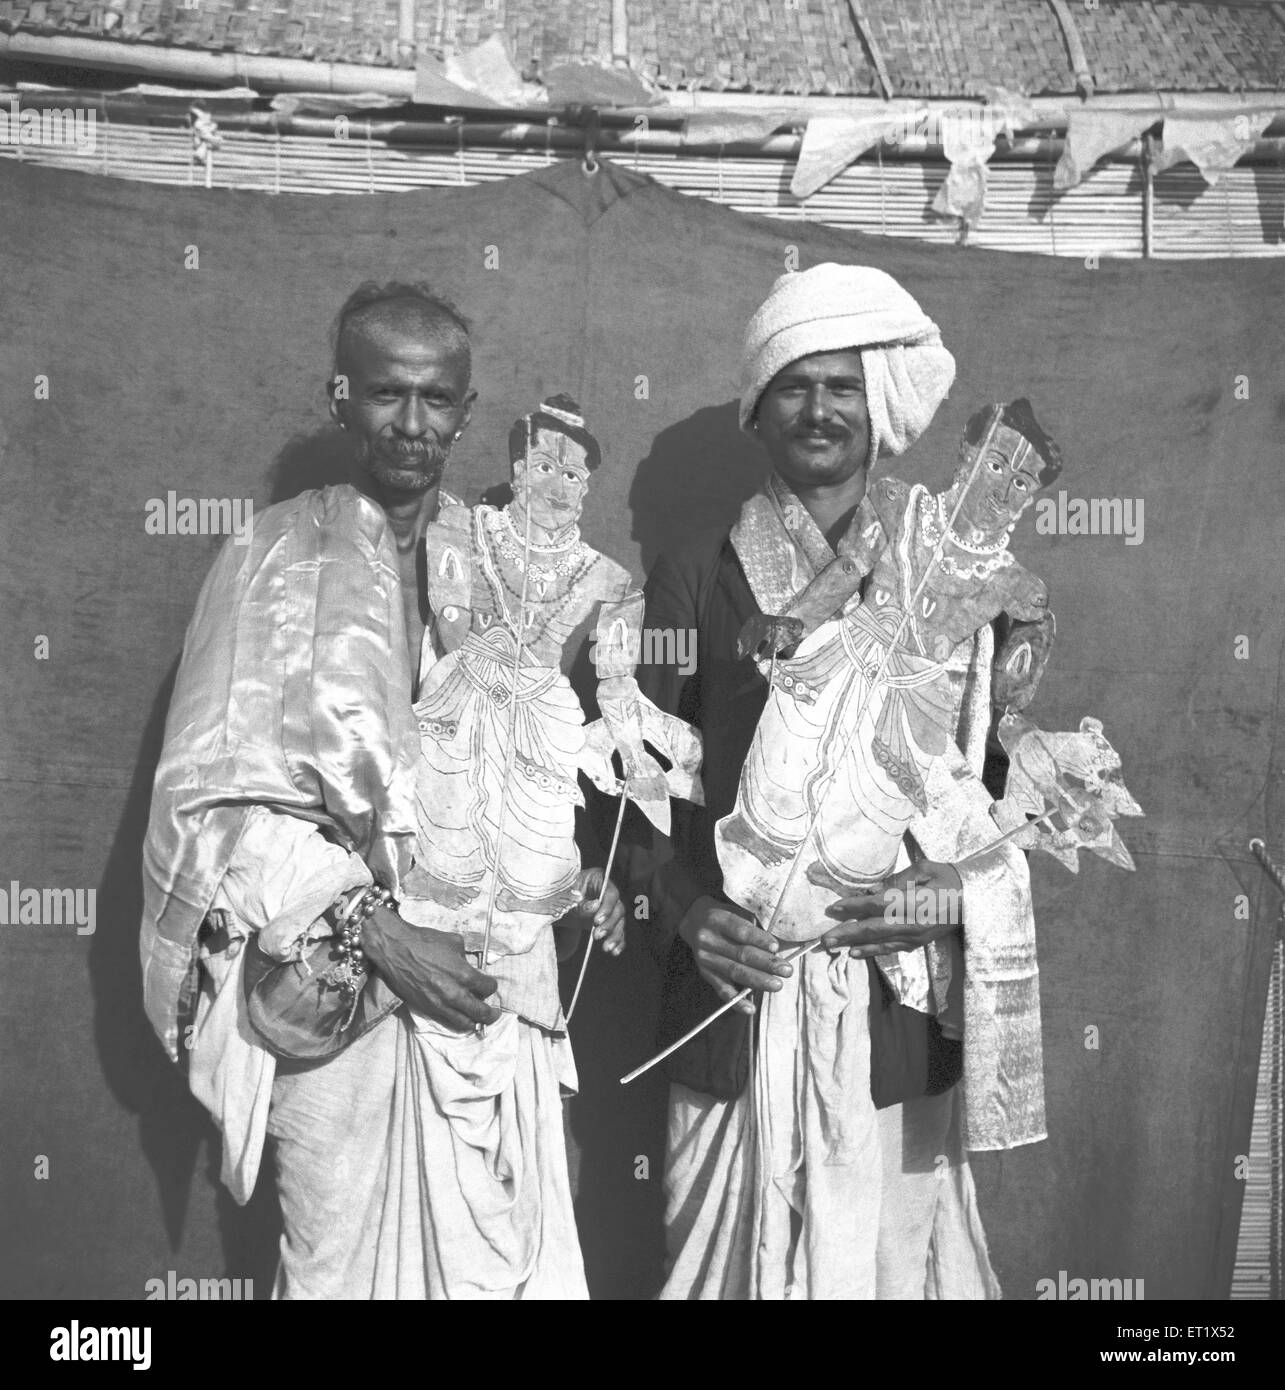 Männer anzeigen transparent lackiertes Leder Marionetten; Schatten-Marionette spielt Unterhaltung; Hallare Dorf; Mysore; Karnataka Stockfoto